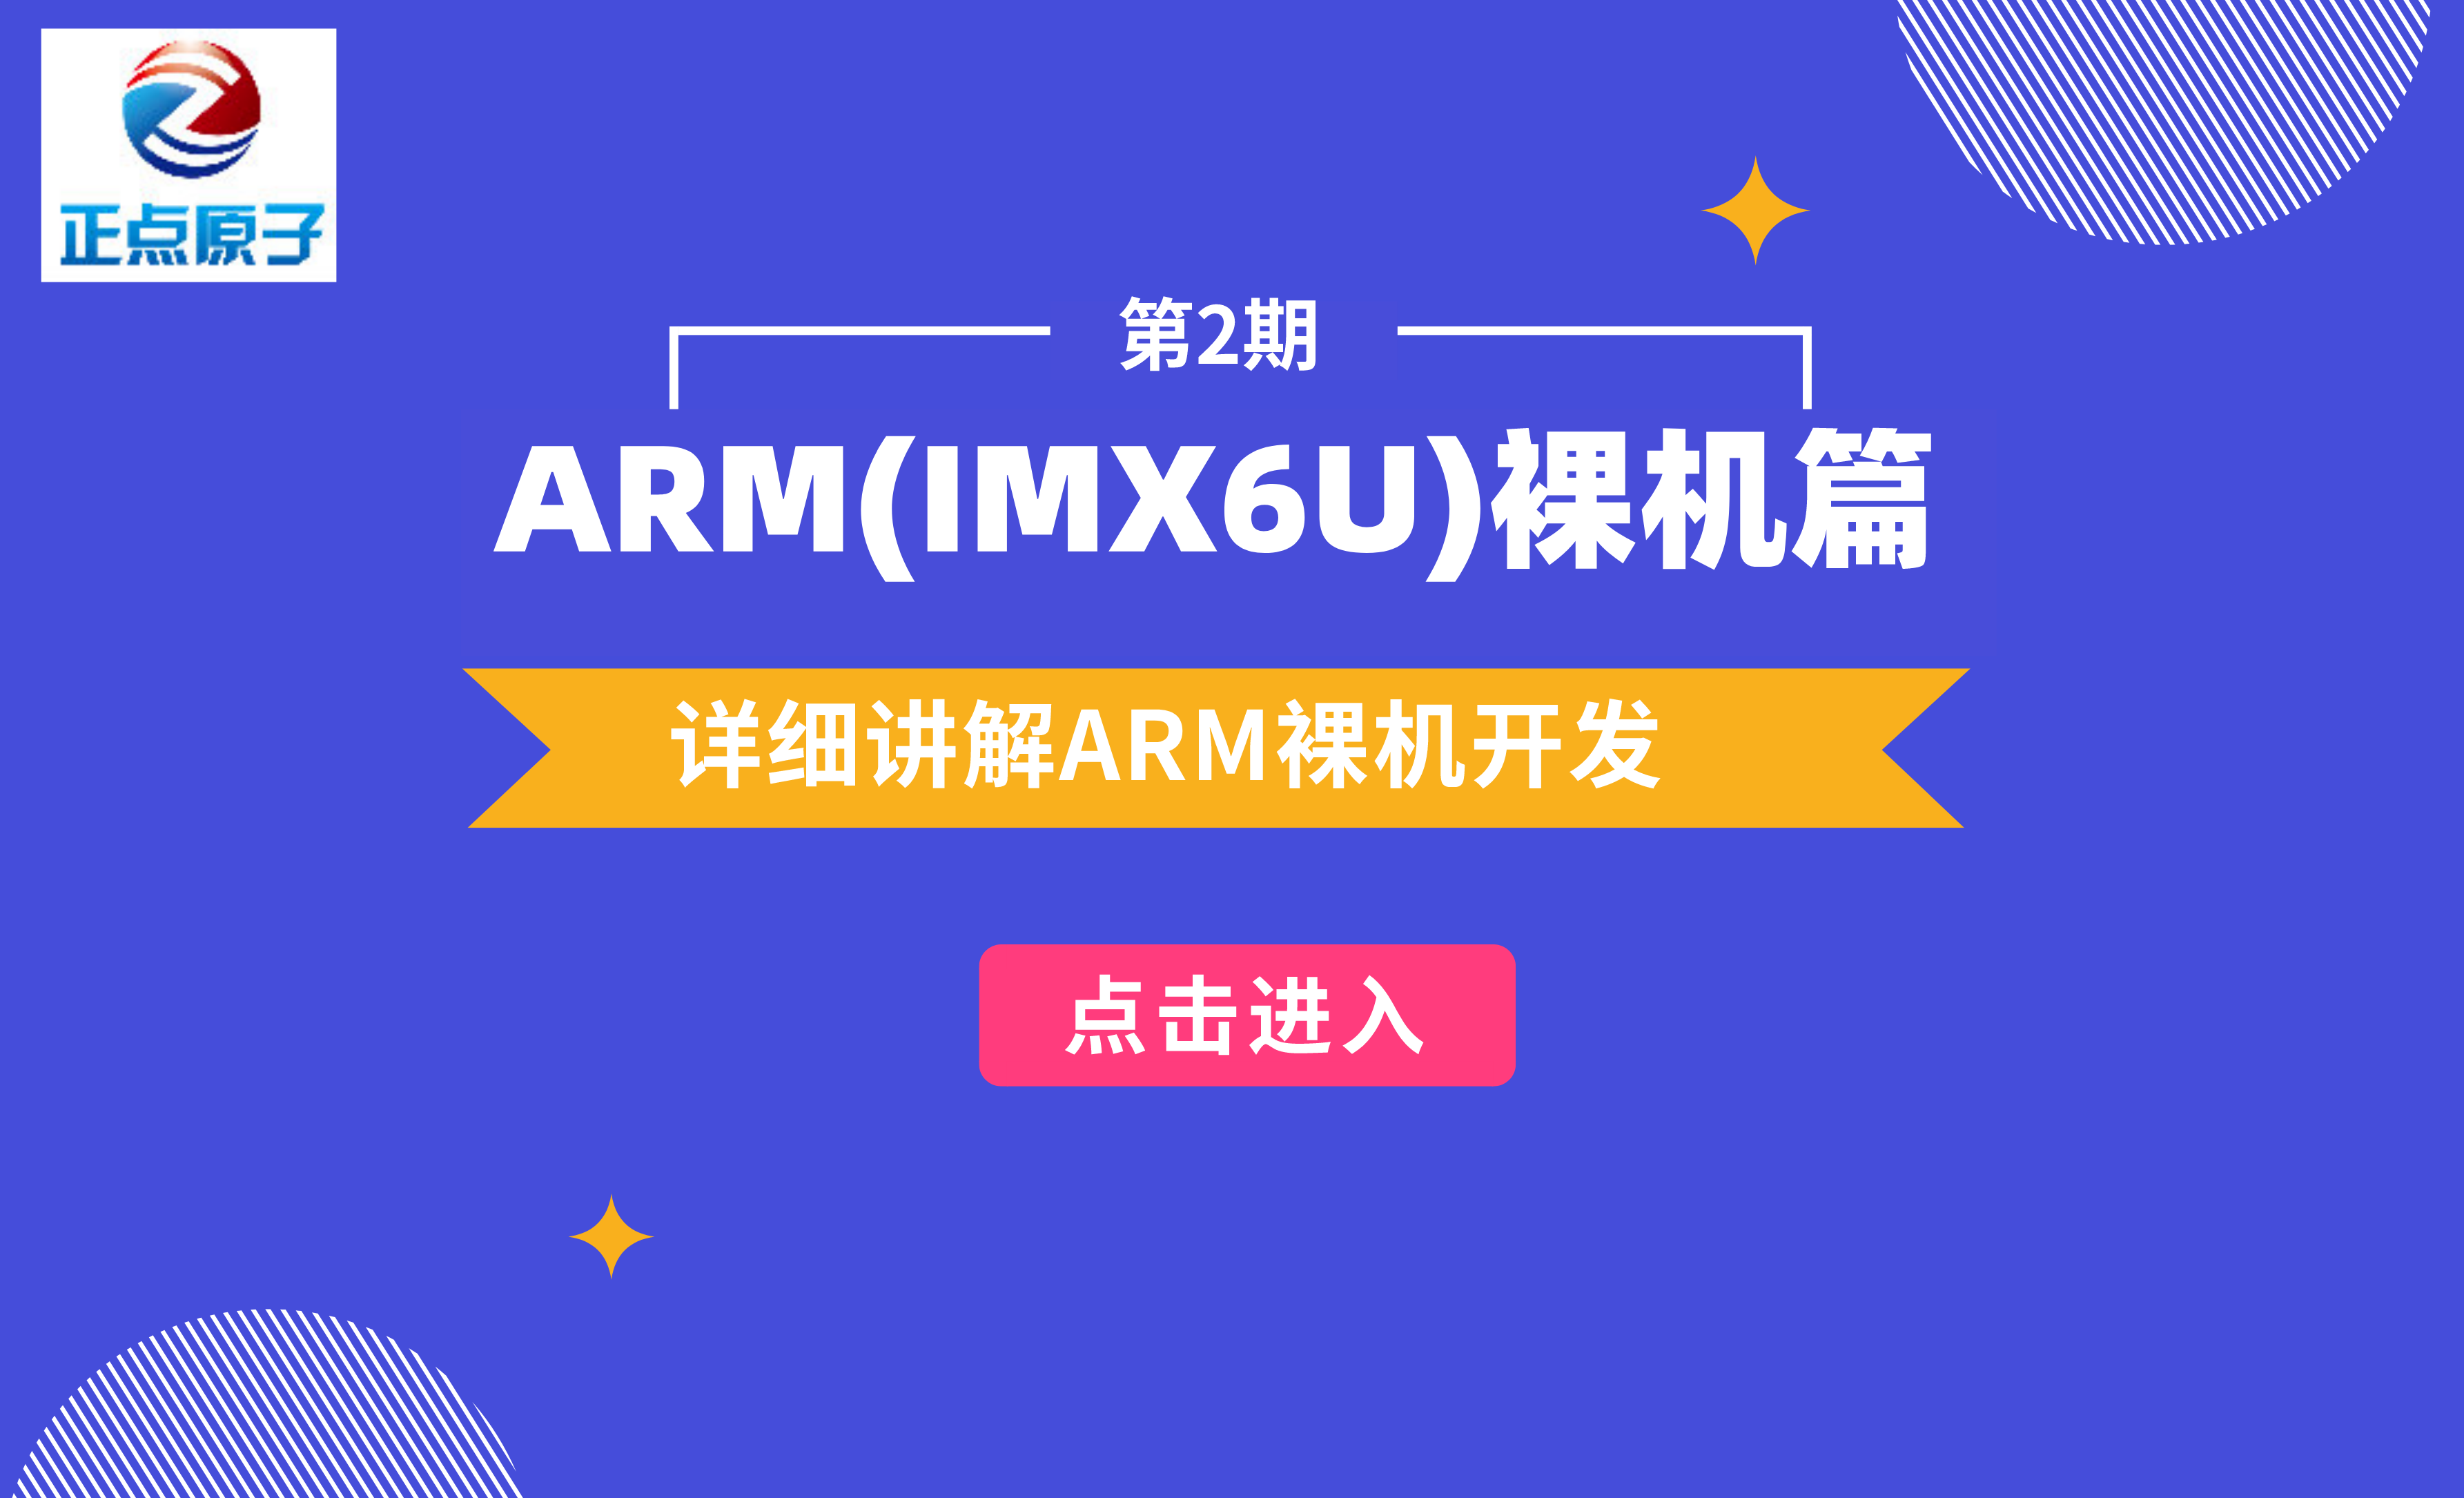 正点原子 阿尔法Linux开发板-第2期 ARM(IMX6U)裸机篇